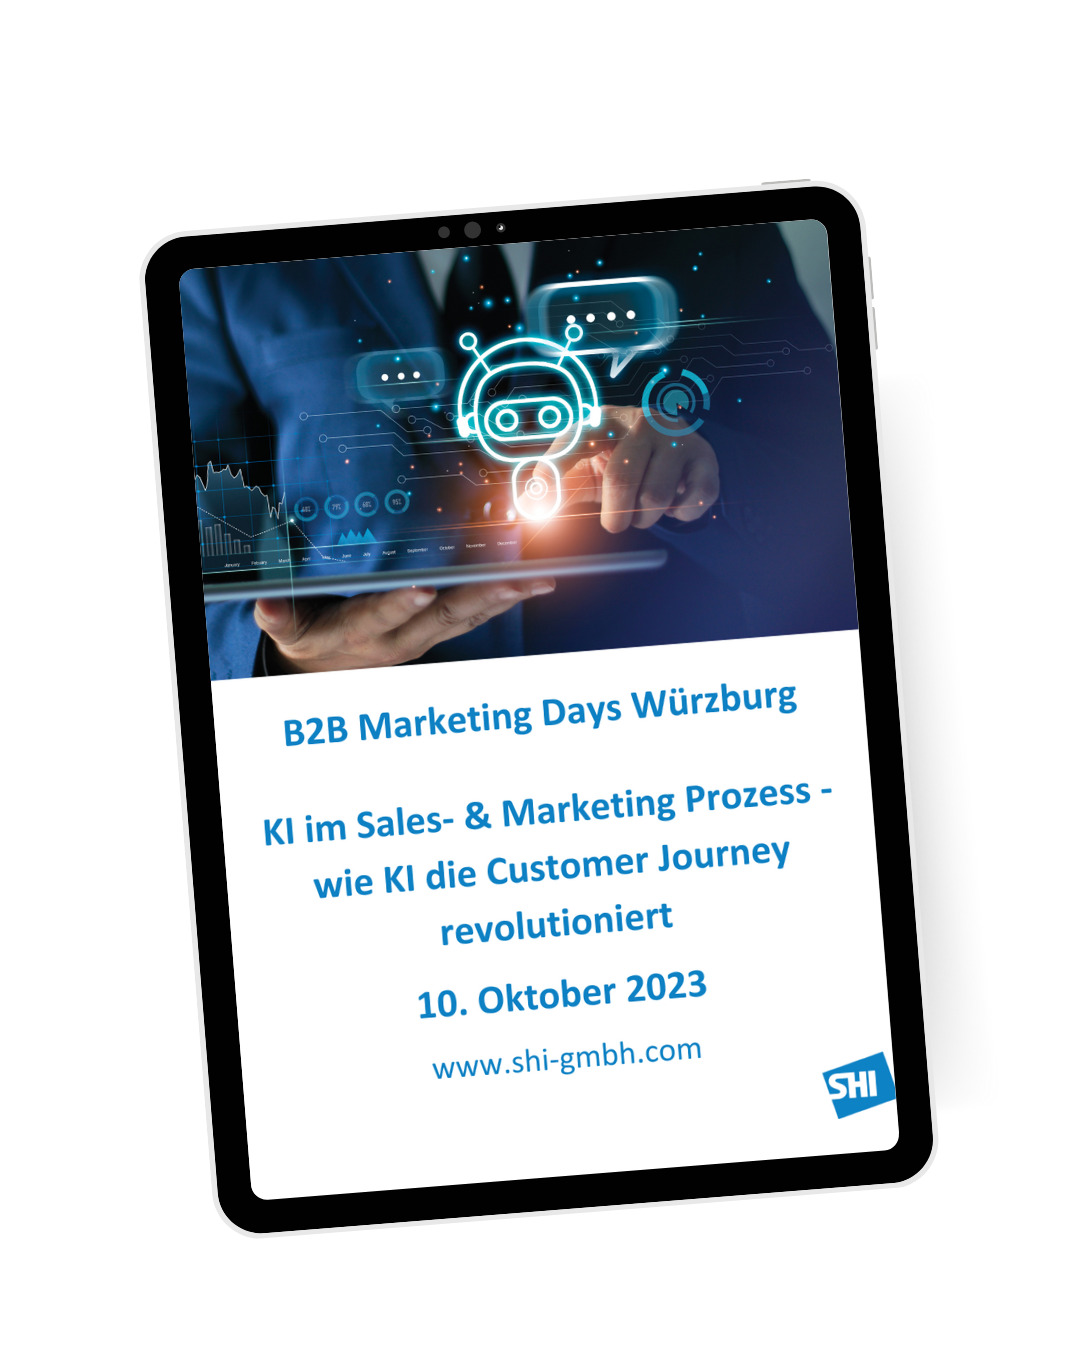 B2B Marketing Days Würzburg 2023: Vortrag zum Thema KI im Sales- & Marketing Prozess